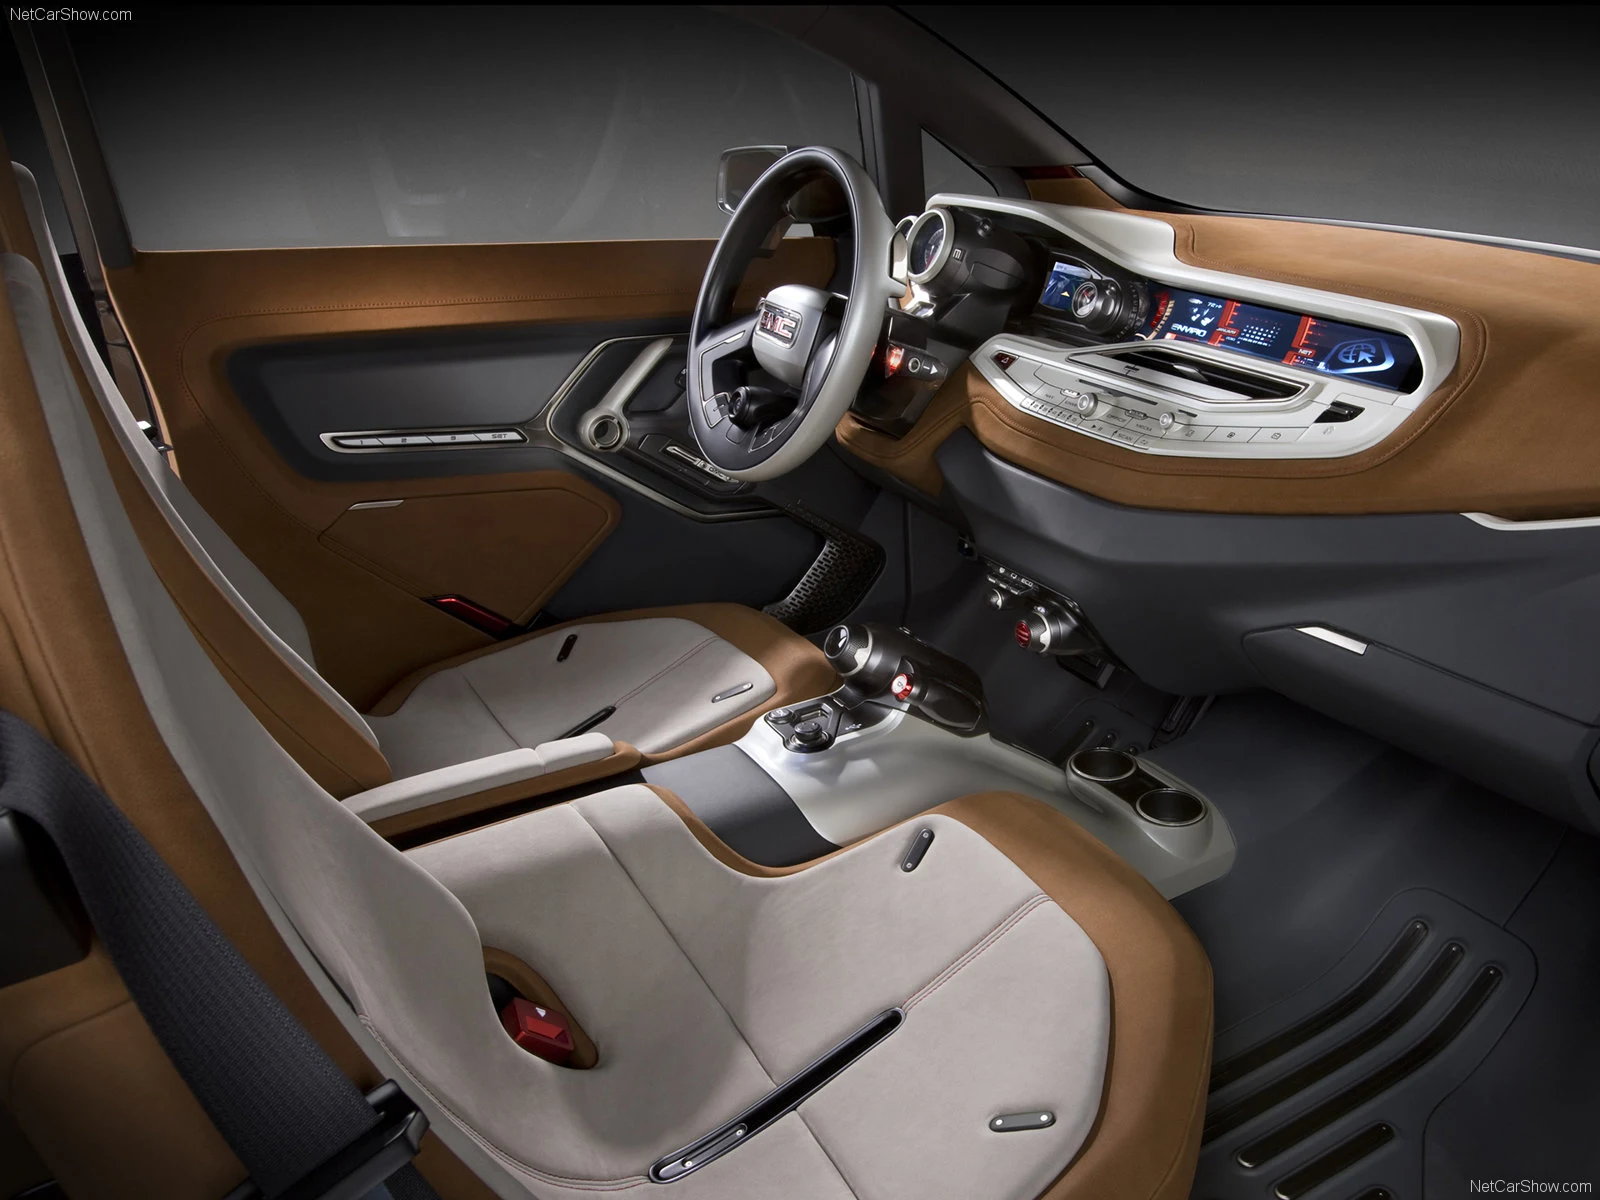 Hình ảnh xe ô tô GMC Granite Concept 2010 & nội ngoại thất